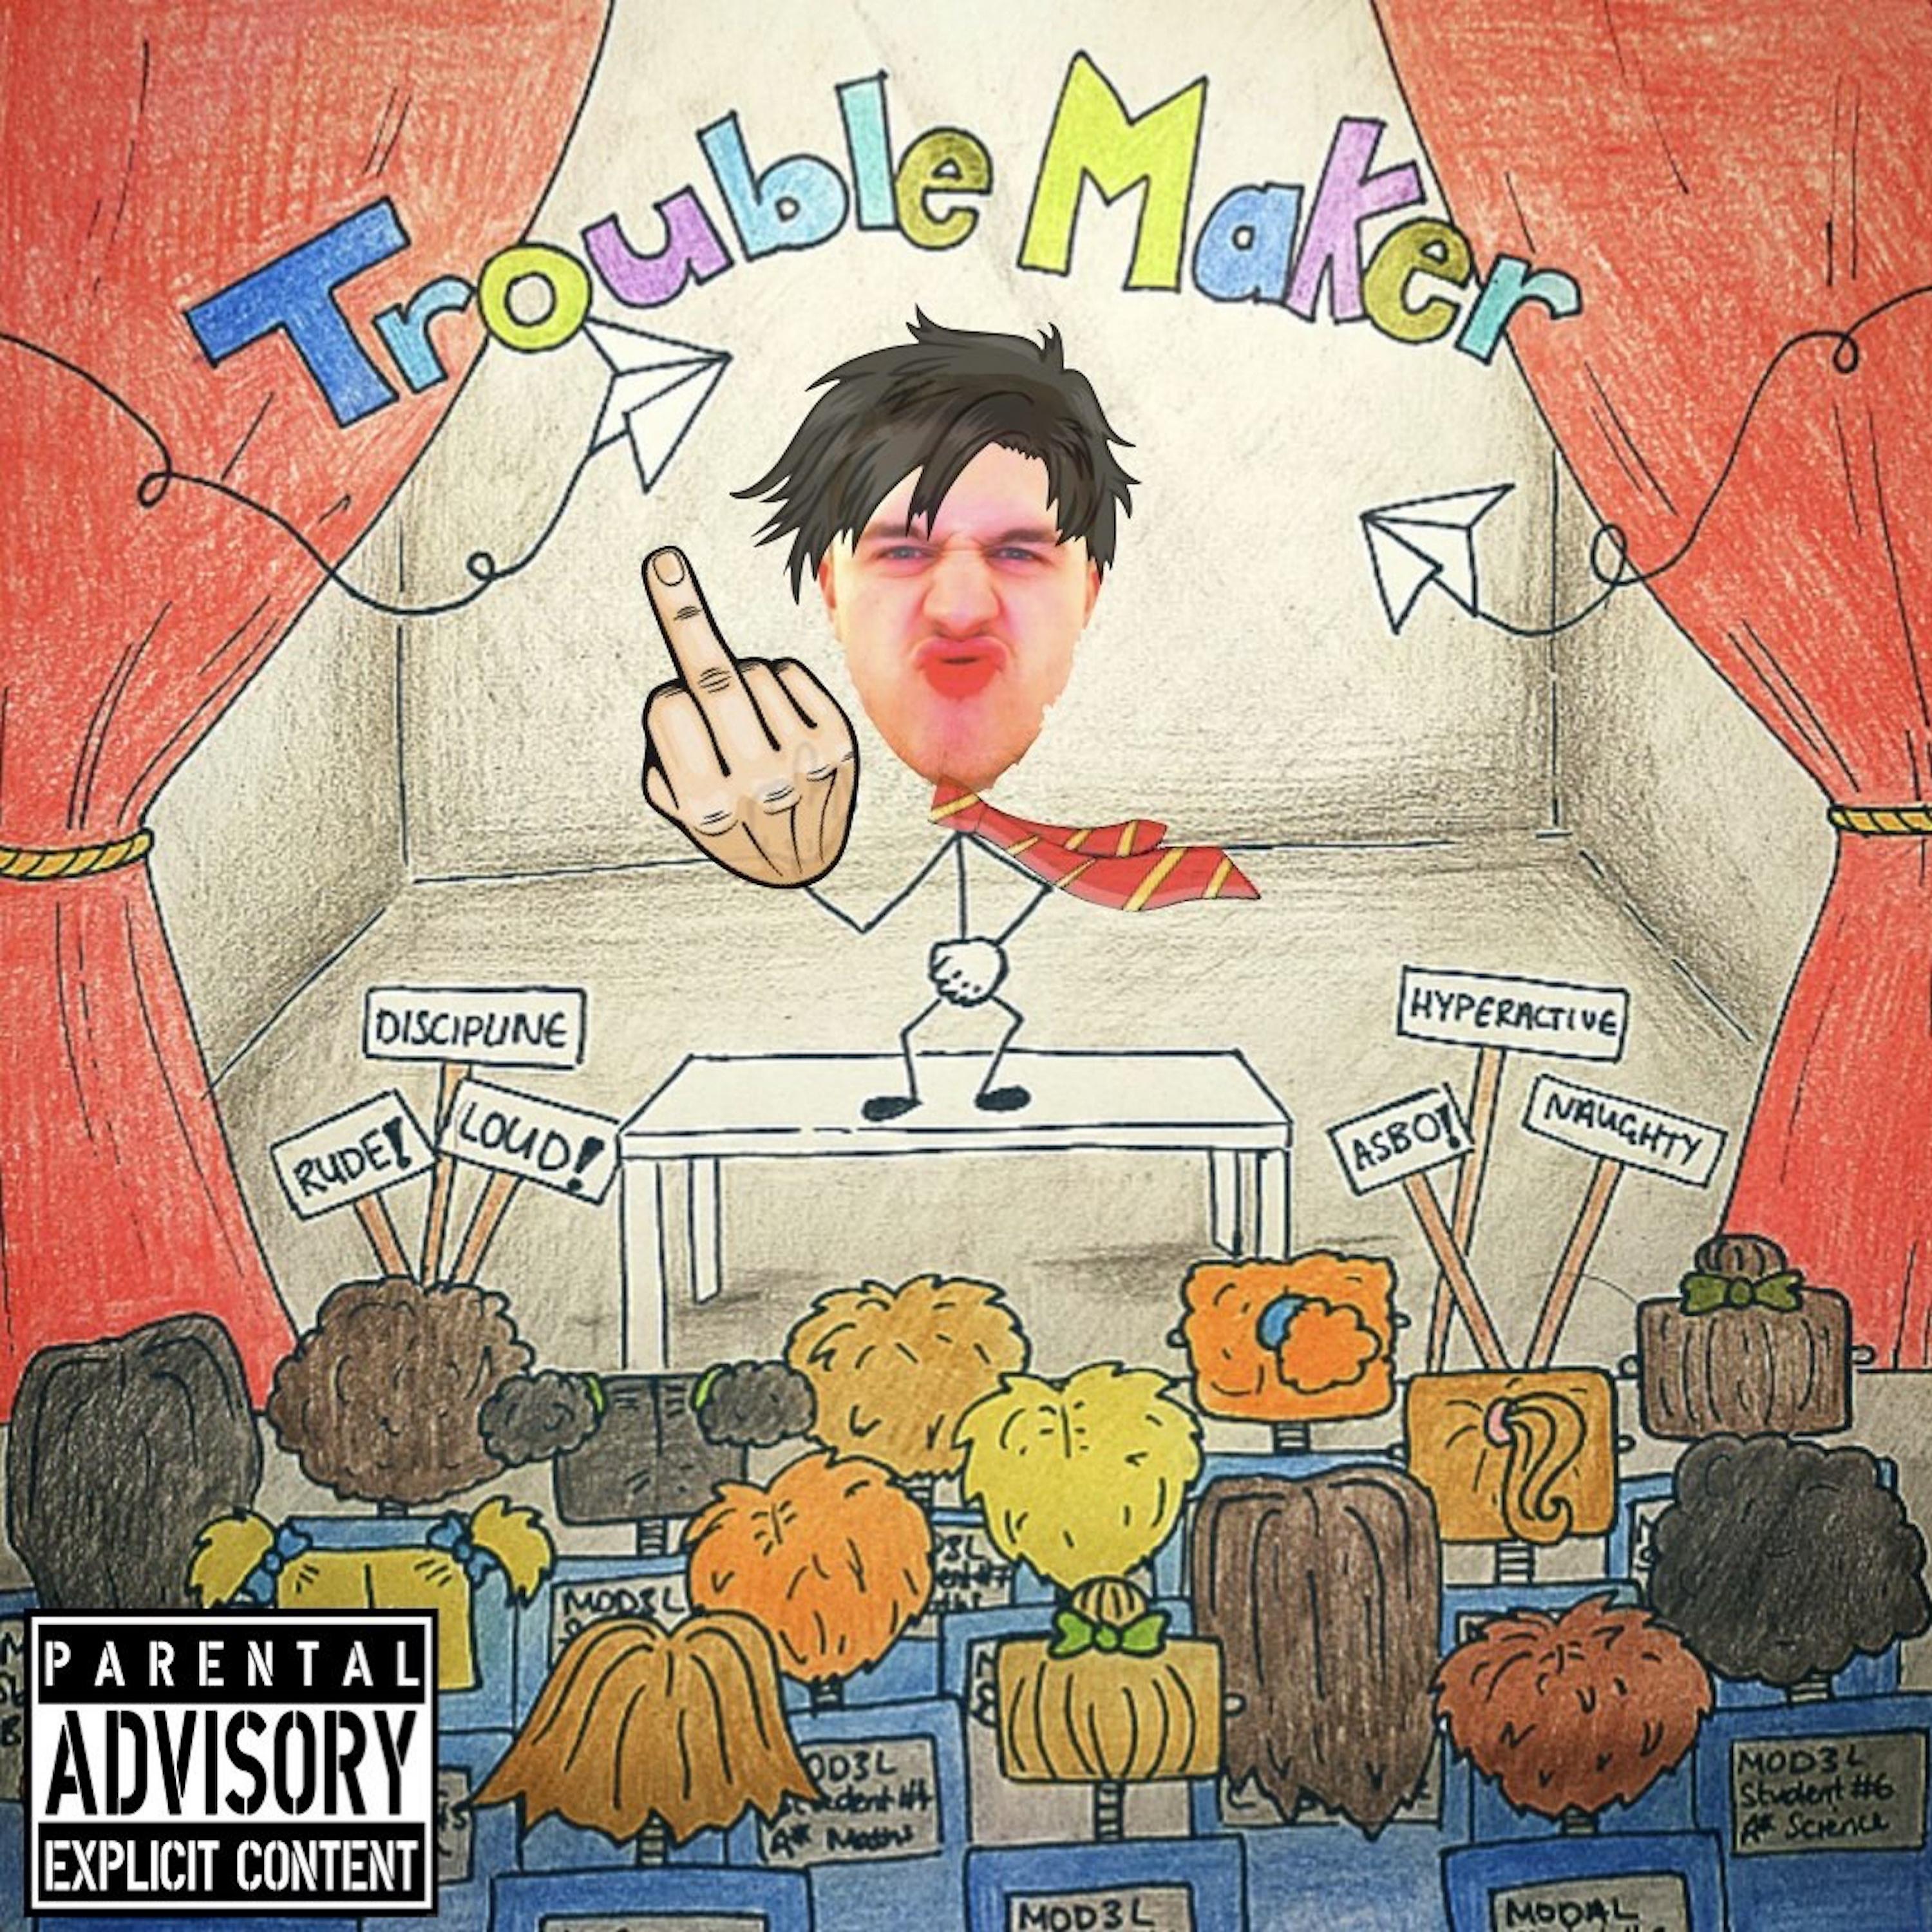 Постер альбома Trouble Maker